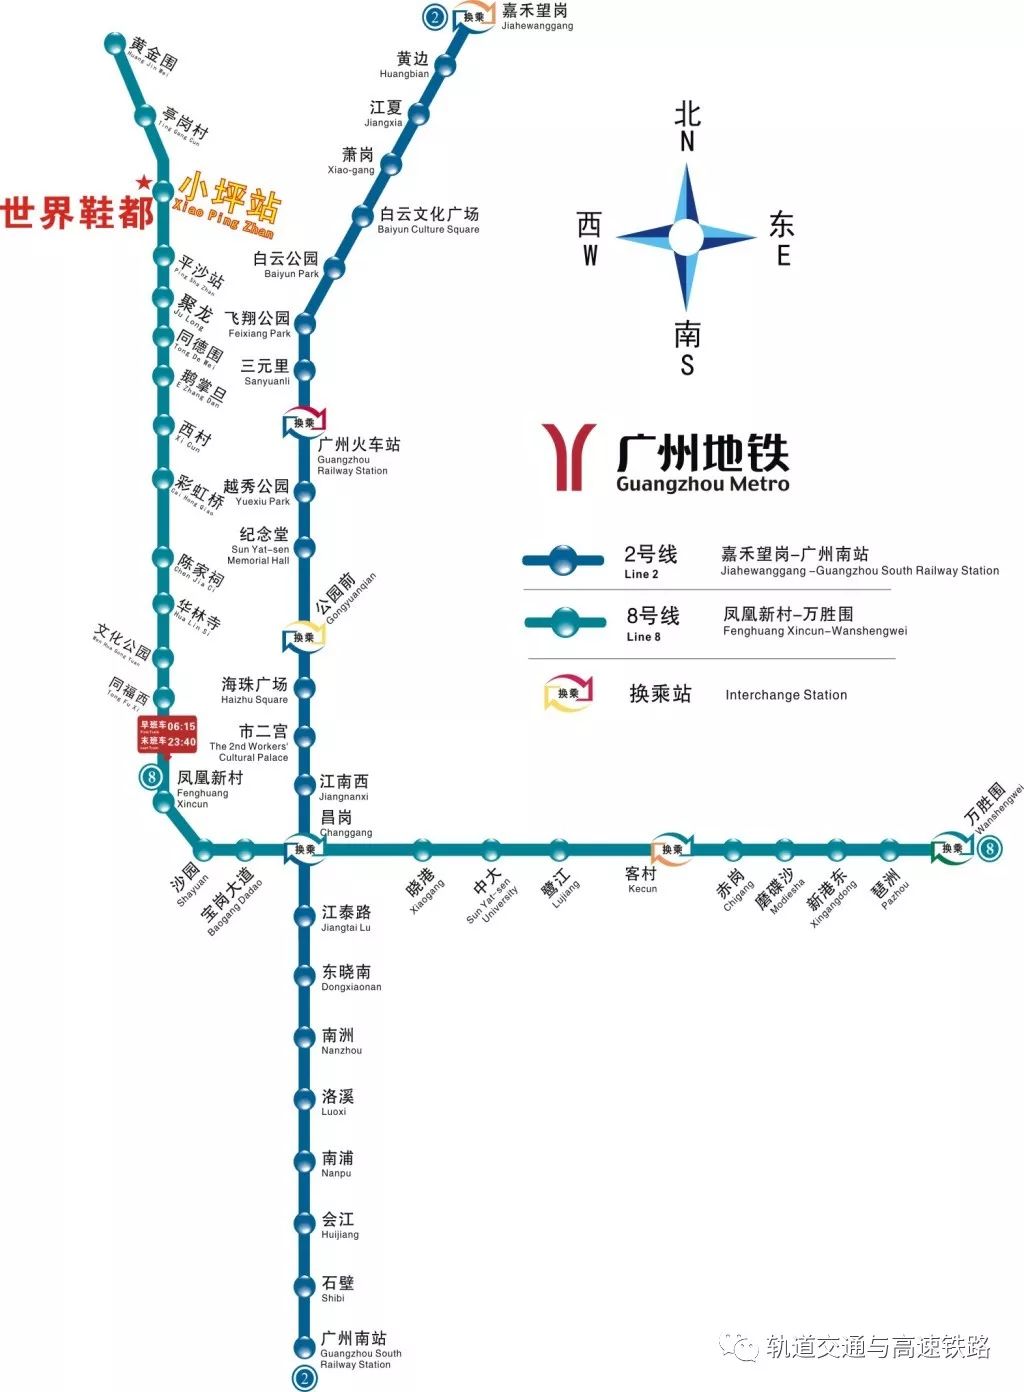 继12月的一场广州地铁四线齐发 现在广州地铁又传来好消息!